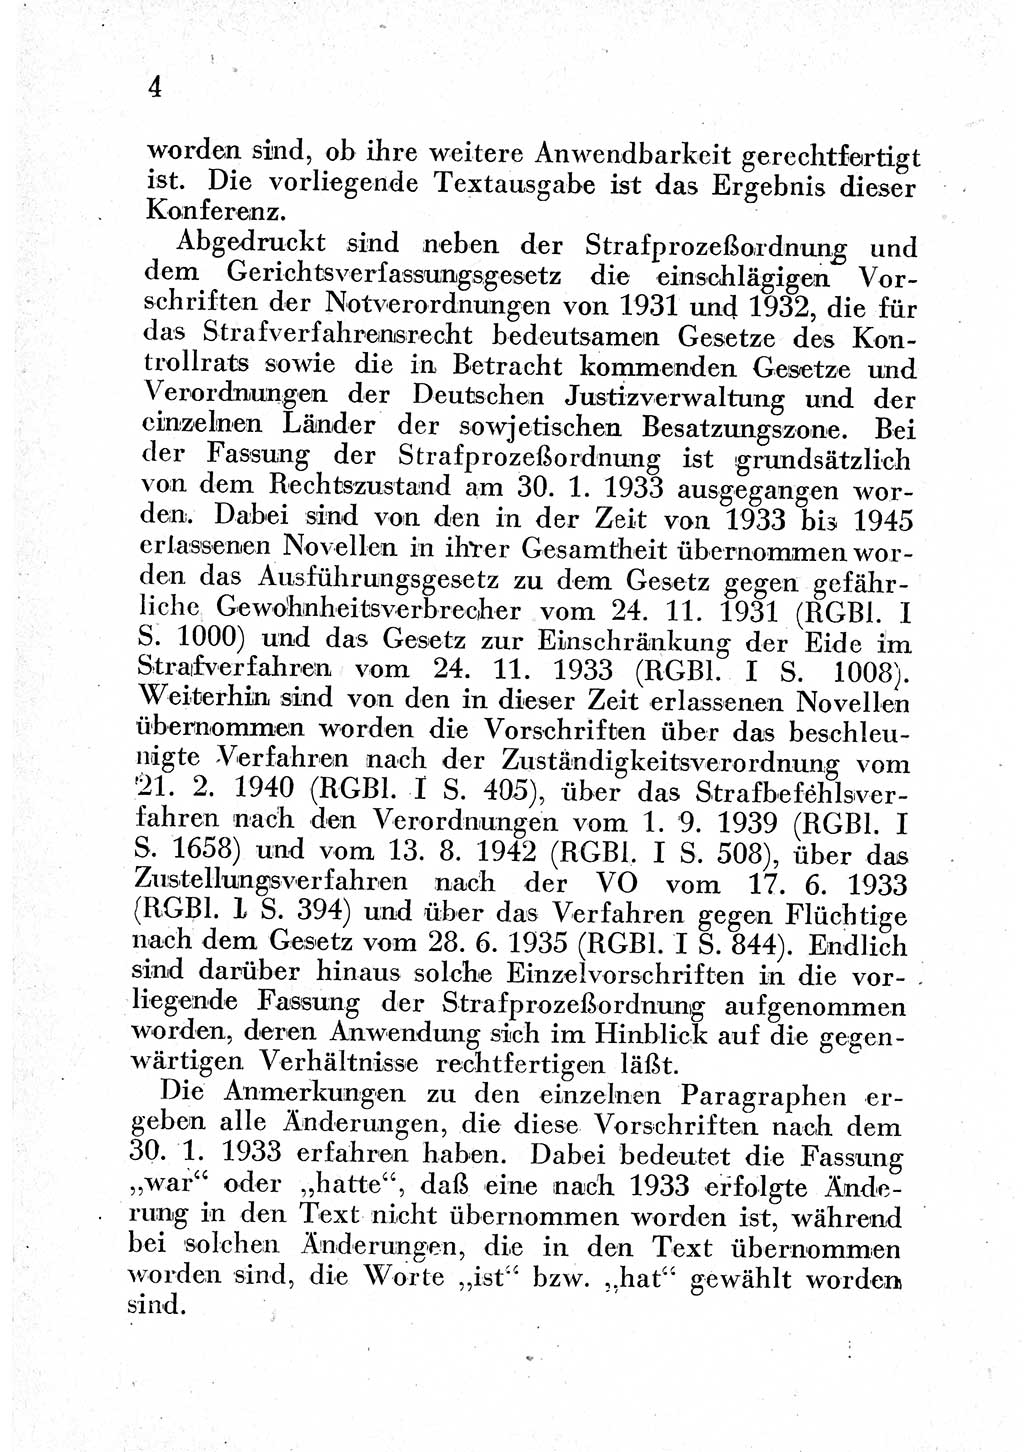 Strafprozeßordnung (StPO), Gerichtsverfassungsgesetz (GVG) und zahlreiche Nebengesetze der sowjetischen Besatzungszone (SBZ) in Deutschland 1949, Seite 4 (StPO GVG Ges. SBZ Dtl. 1949, S. 4)